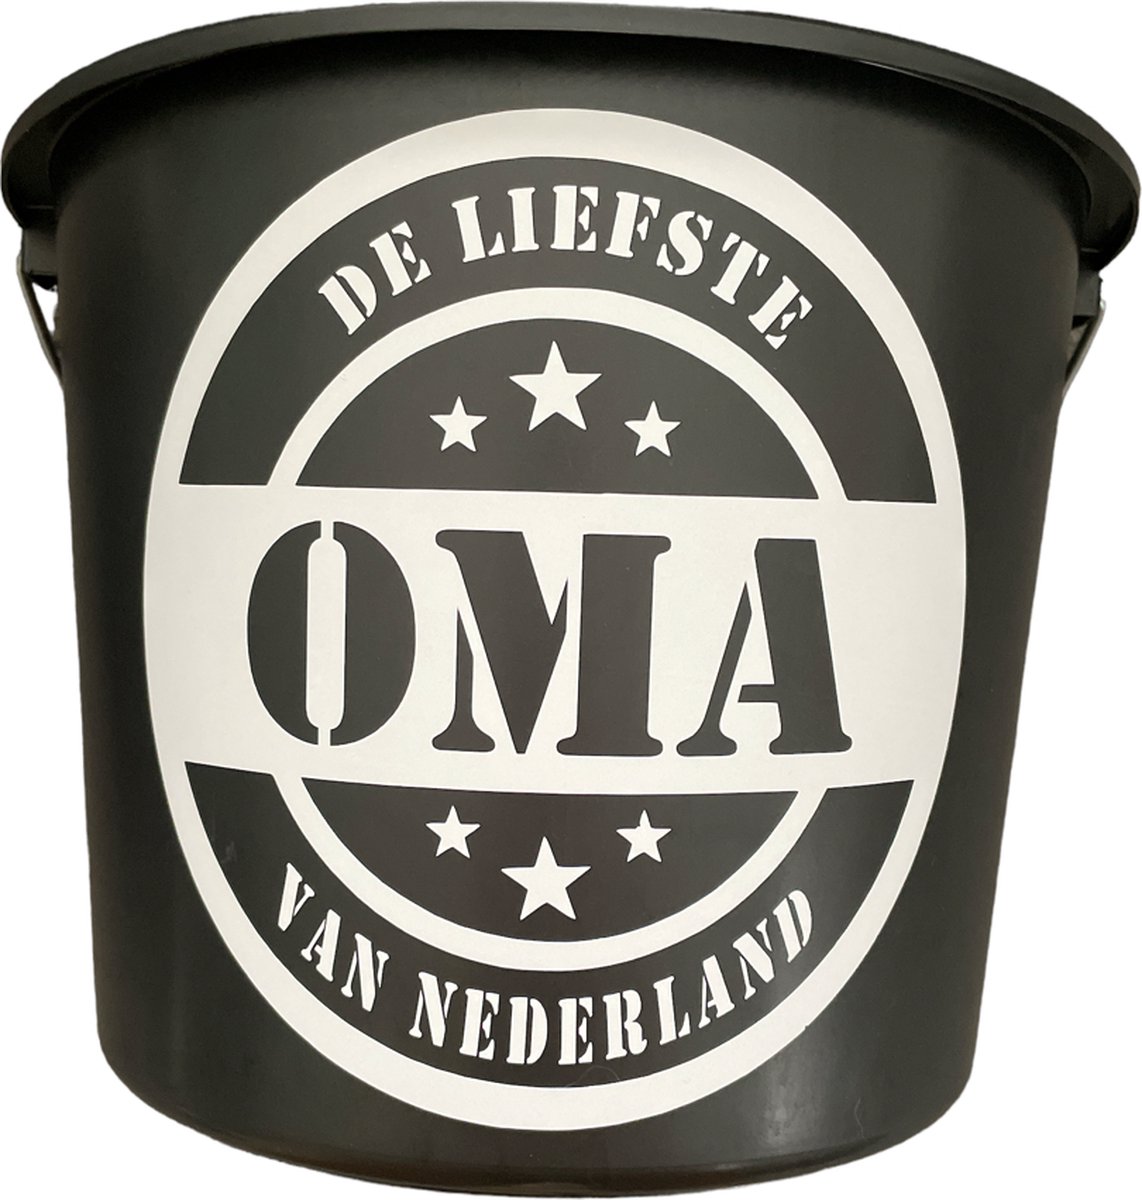 Cadeau Emmer - De liefste Oma van Nederland - 12 liter - zwart - cadeau - geschenk - gift - kado - surprise